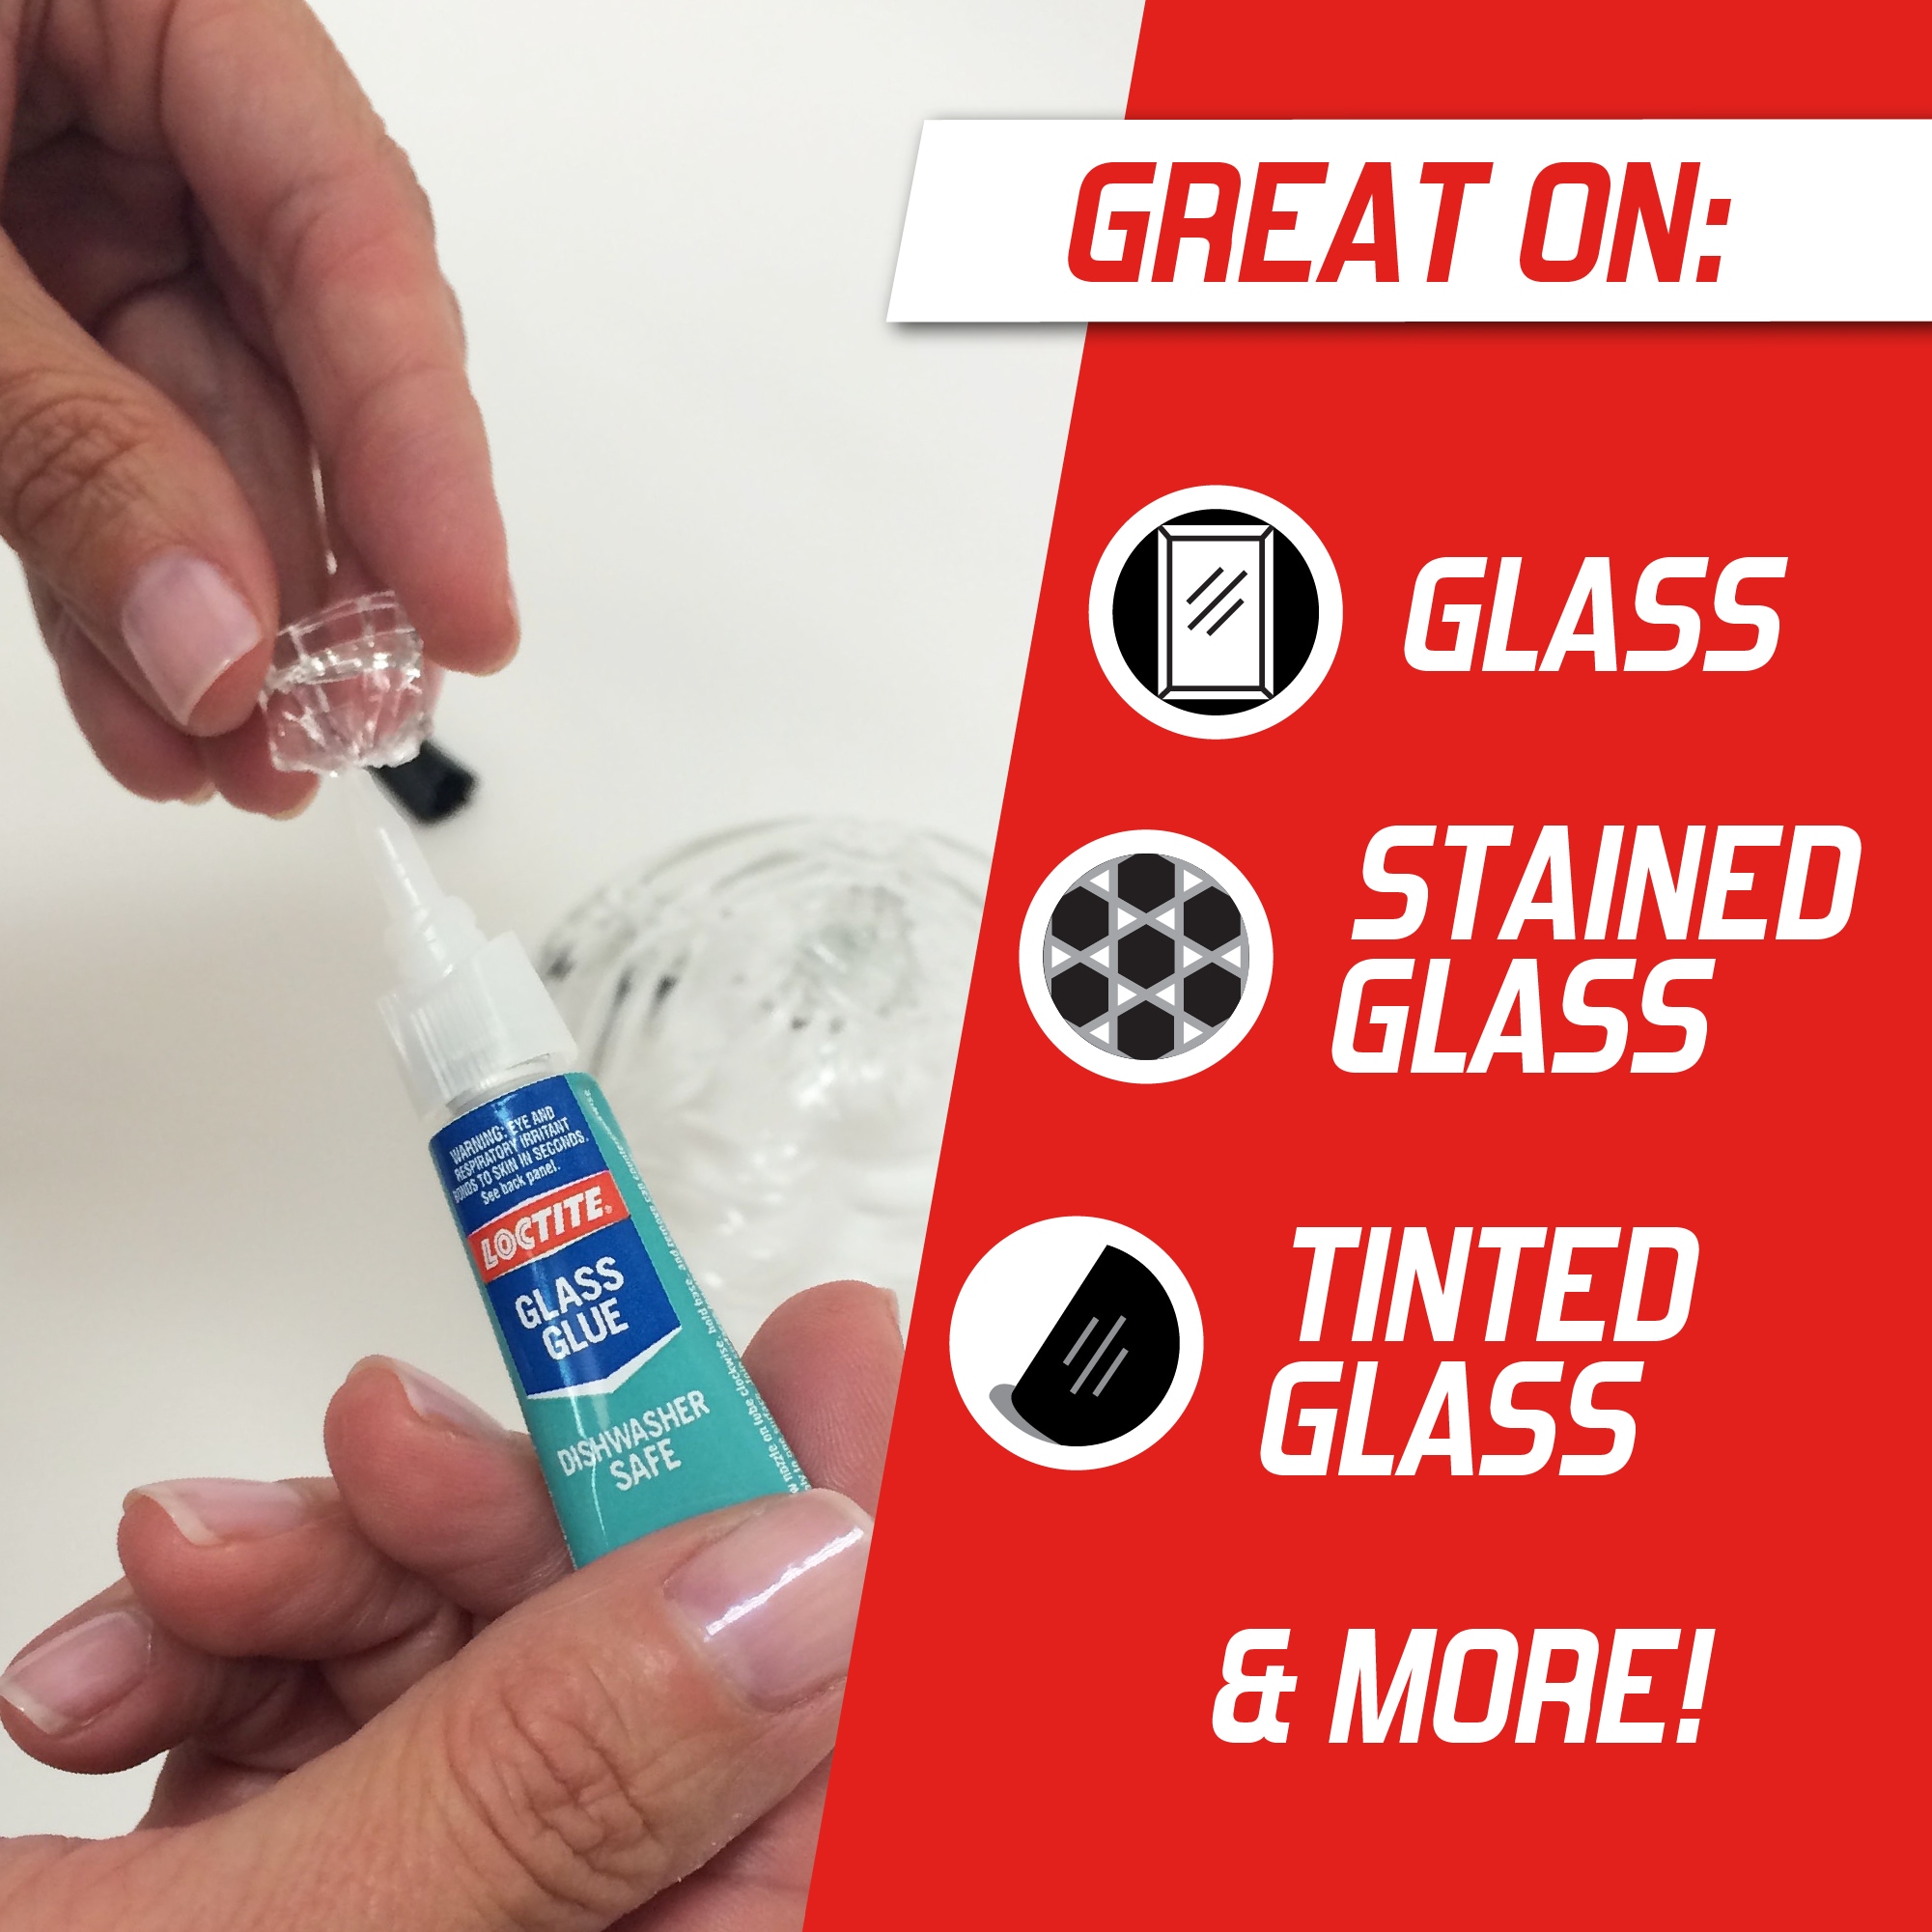 Multi-Purpose High-Strength Glue Super Glass Glue Adhesive For Wallpaper  Furniture Glass 